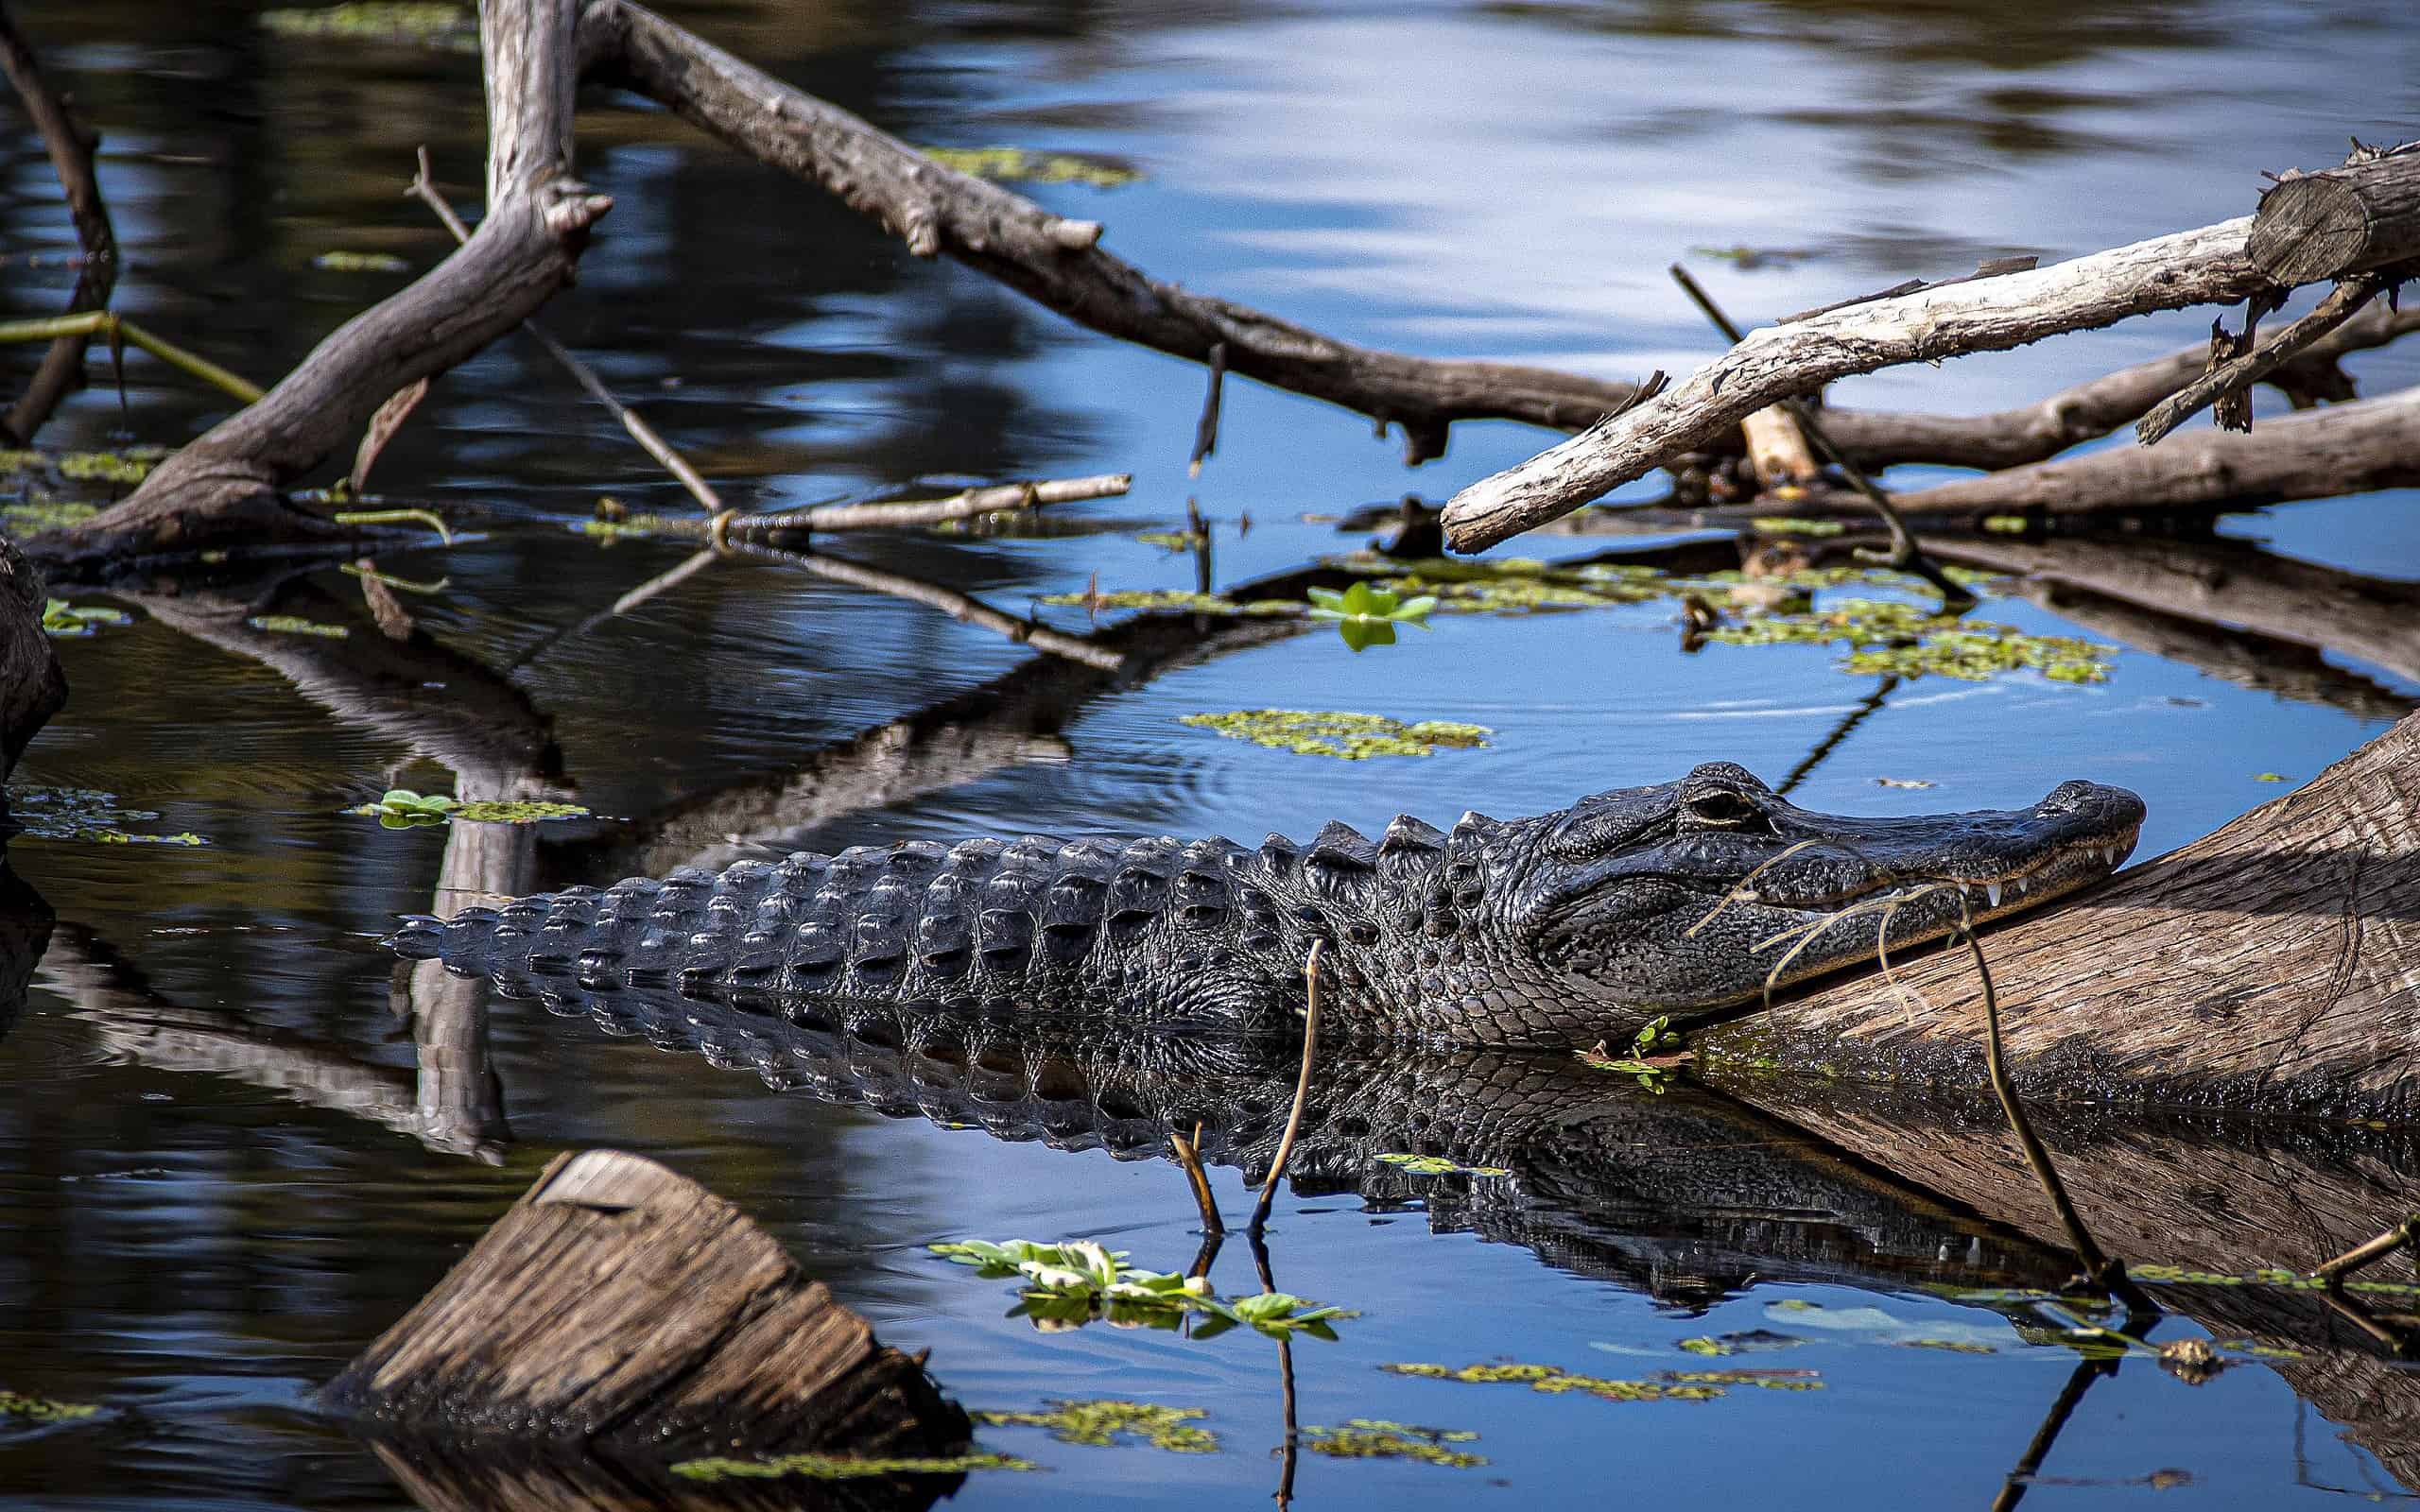 Ritratto di un alligatore a Lettuce Lake Park, Florida